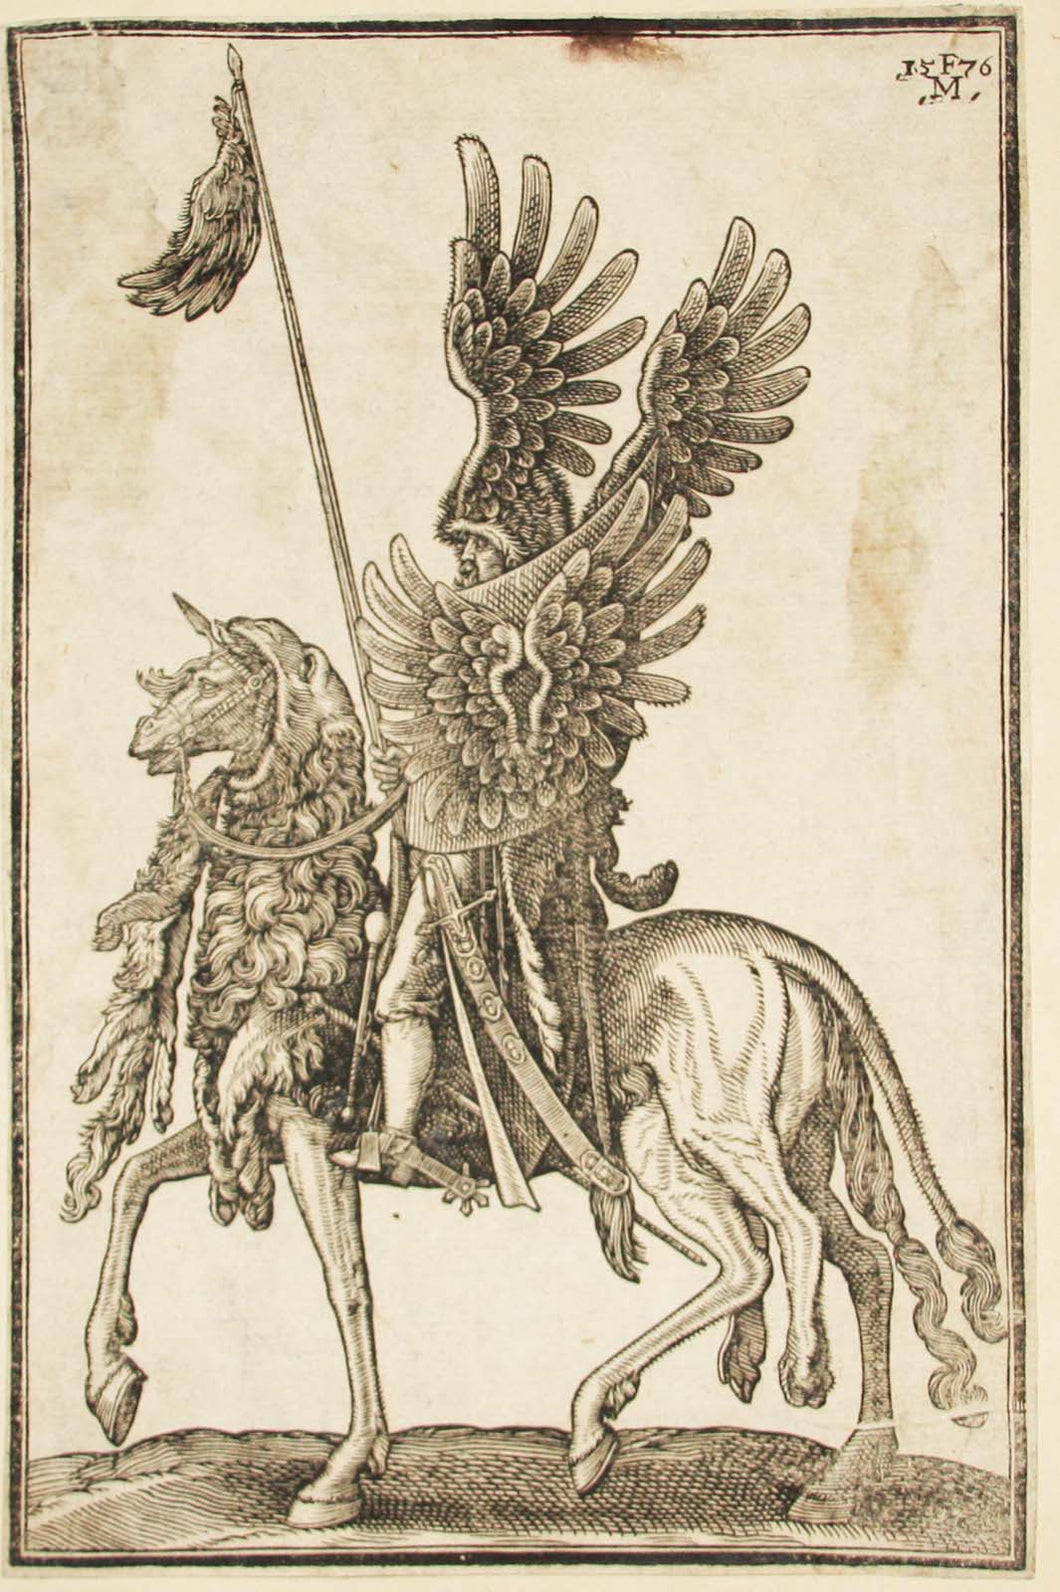 Un chevalier à cheval; avec les ailes d'un grand oiseau sur son casque et son bouclier; le cheval avec une peau de lion comme toile de selle. 